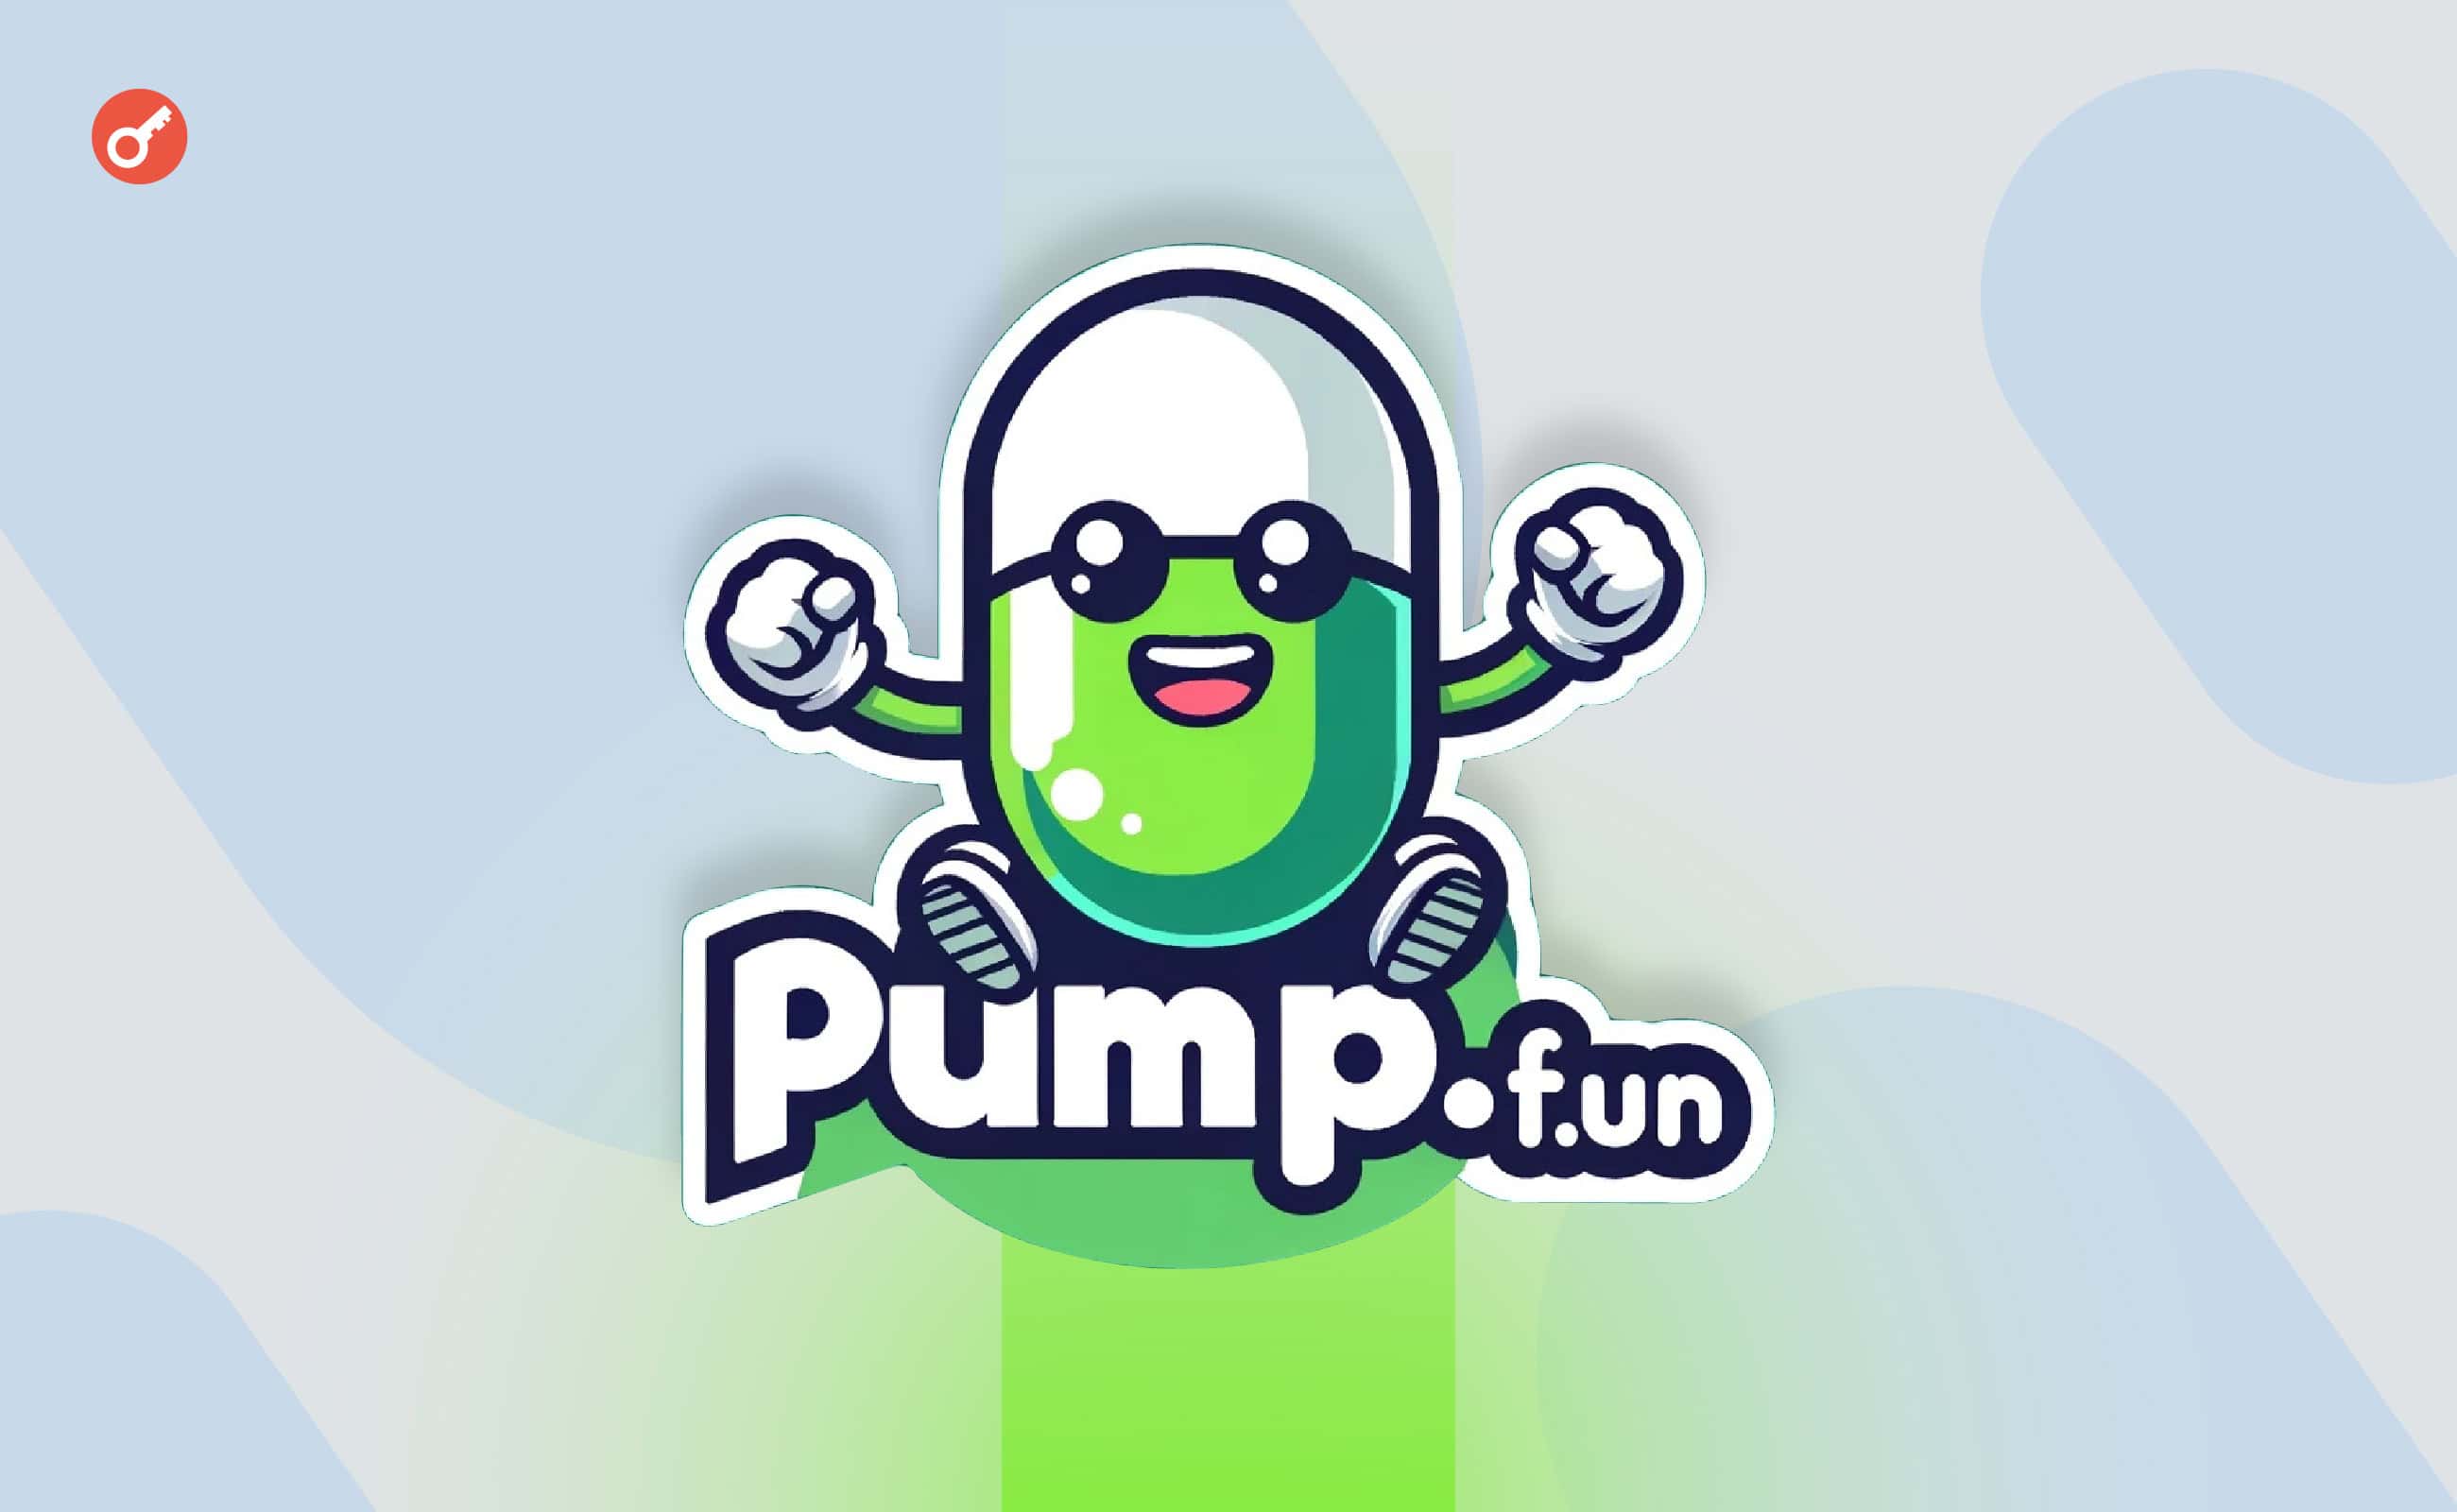 Дохід pump.fun перетнув позначку в $1 млн за добу. Головний колаж новини.